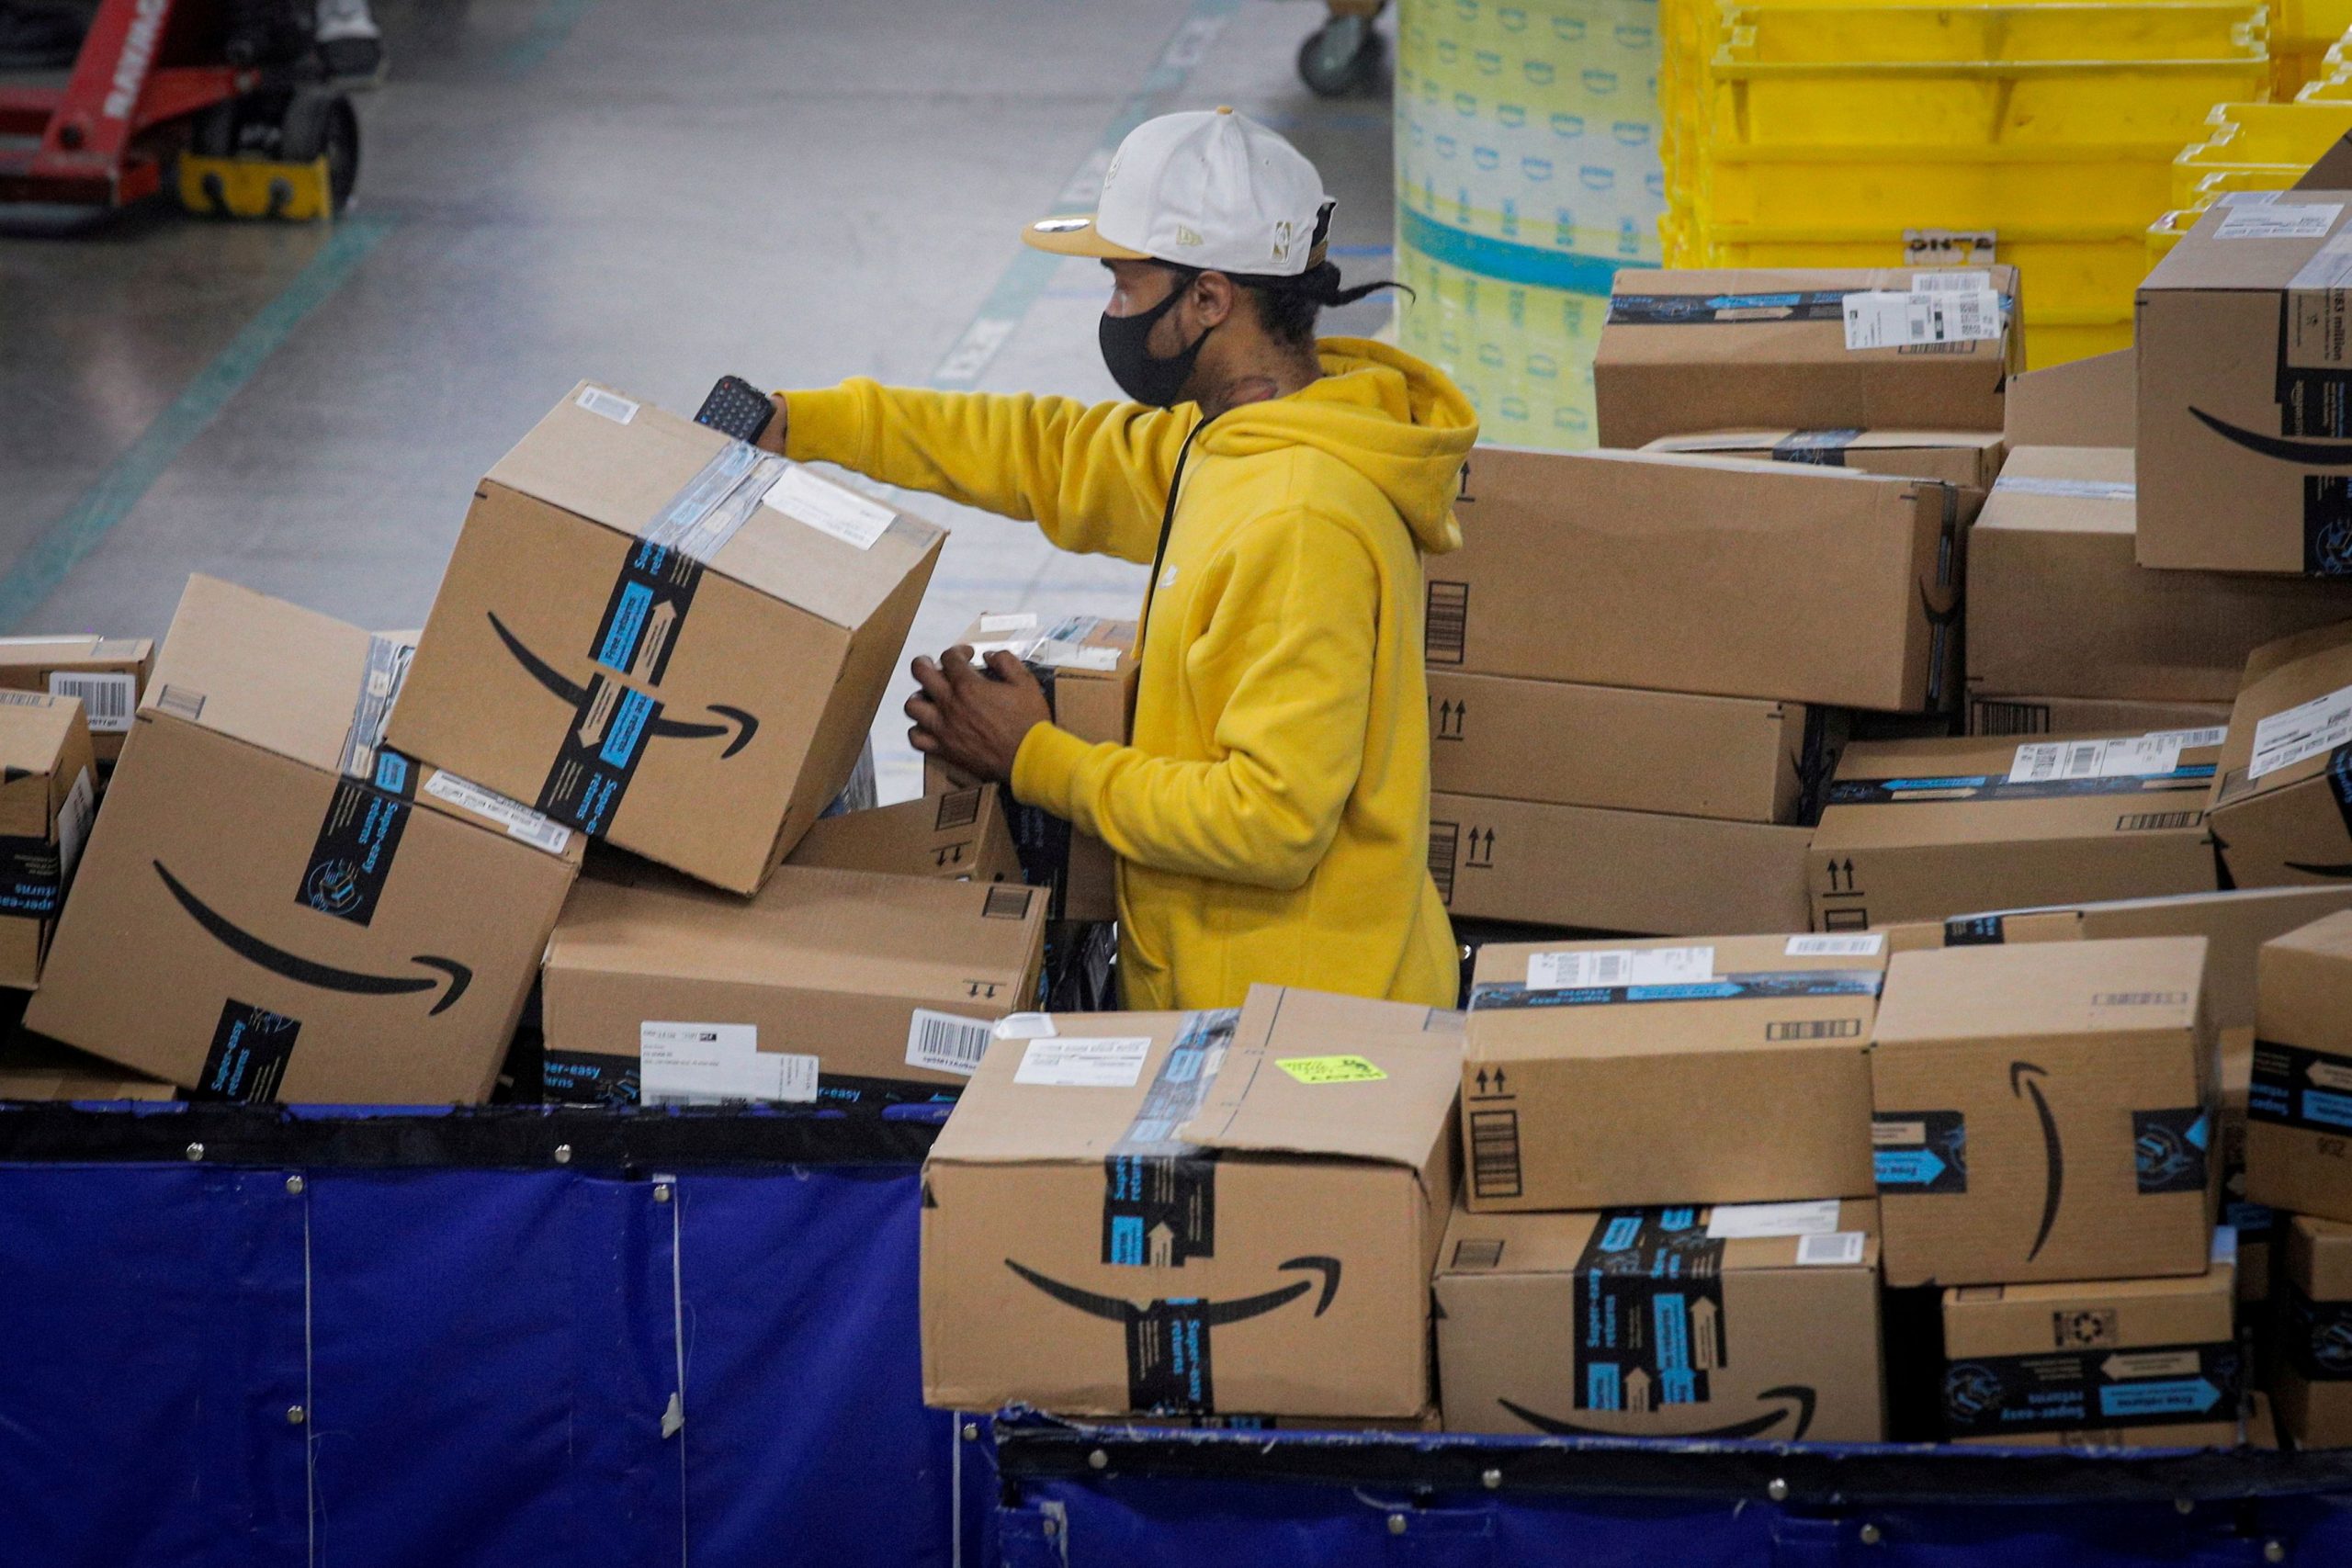 Γερμανία: Απεργία στα κέντρα διανομής της Amazon σε όλη τη χώρα ανακοίνωσε το κορυφαίο συνδικάτο Ver.di